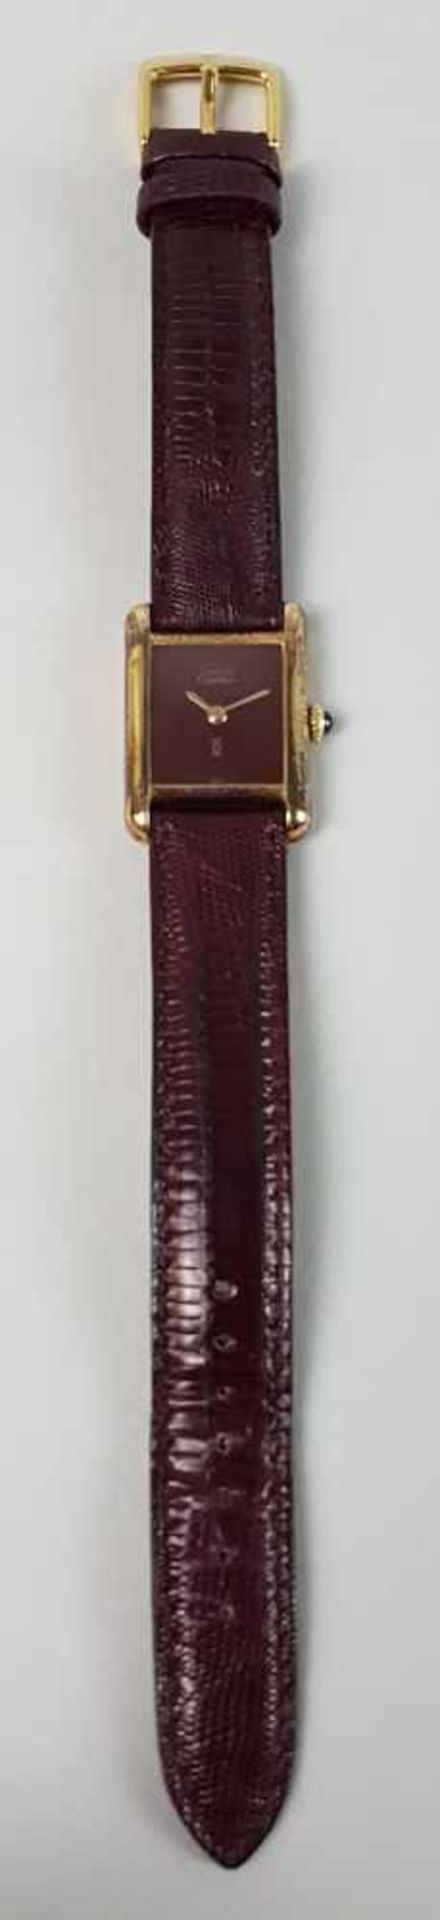 Damenarmbanduhr - Must de Cartier, 925-Silber vergoldet,rechteckiges schwarzes Zifferblatt,